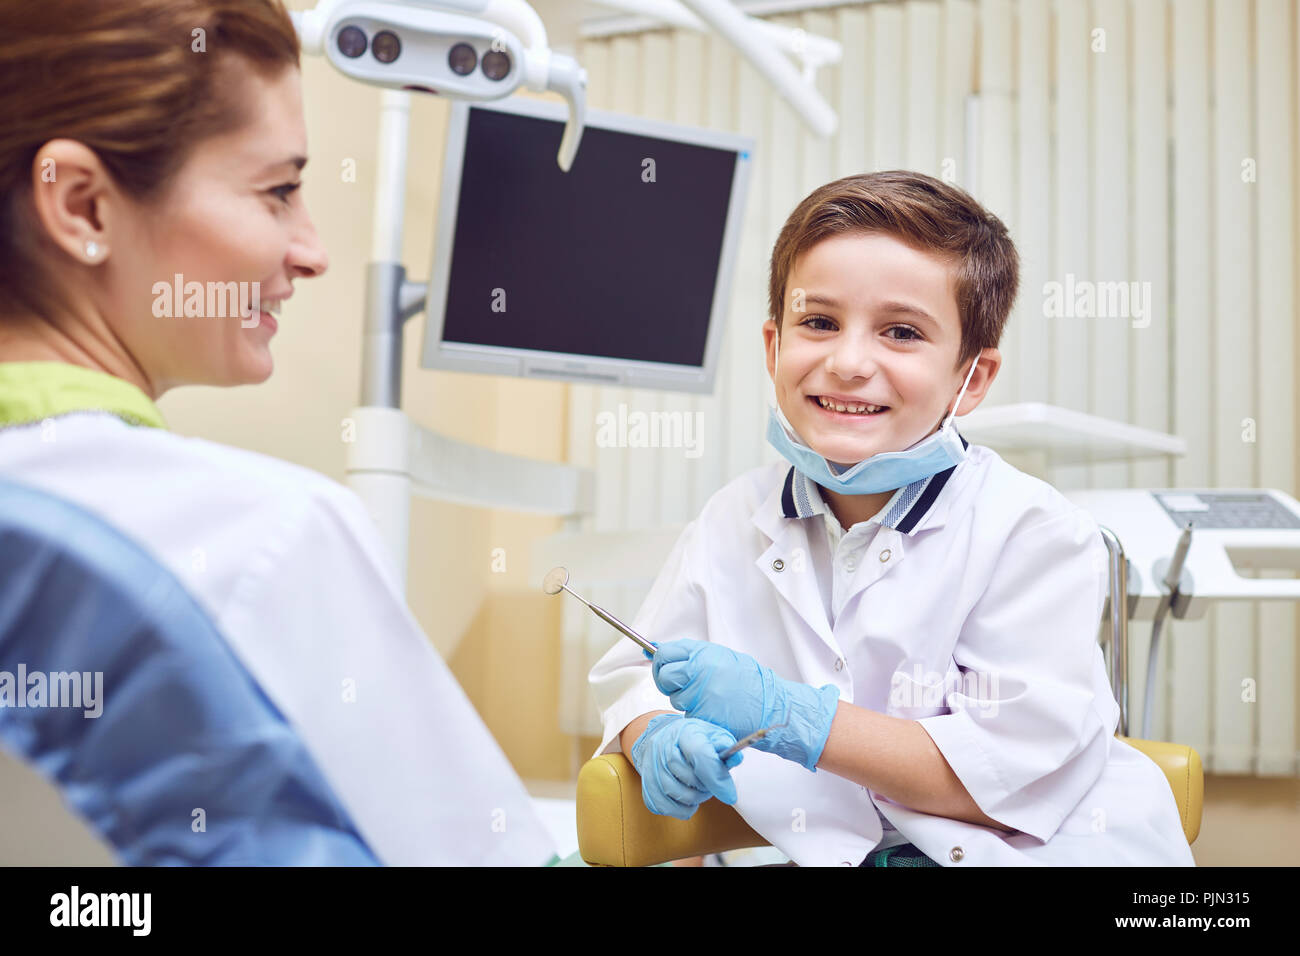 Ein Junge ist ein Zahnarzt mit einem Patienten in einer Zahnklinik Stockfoto